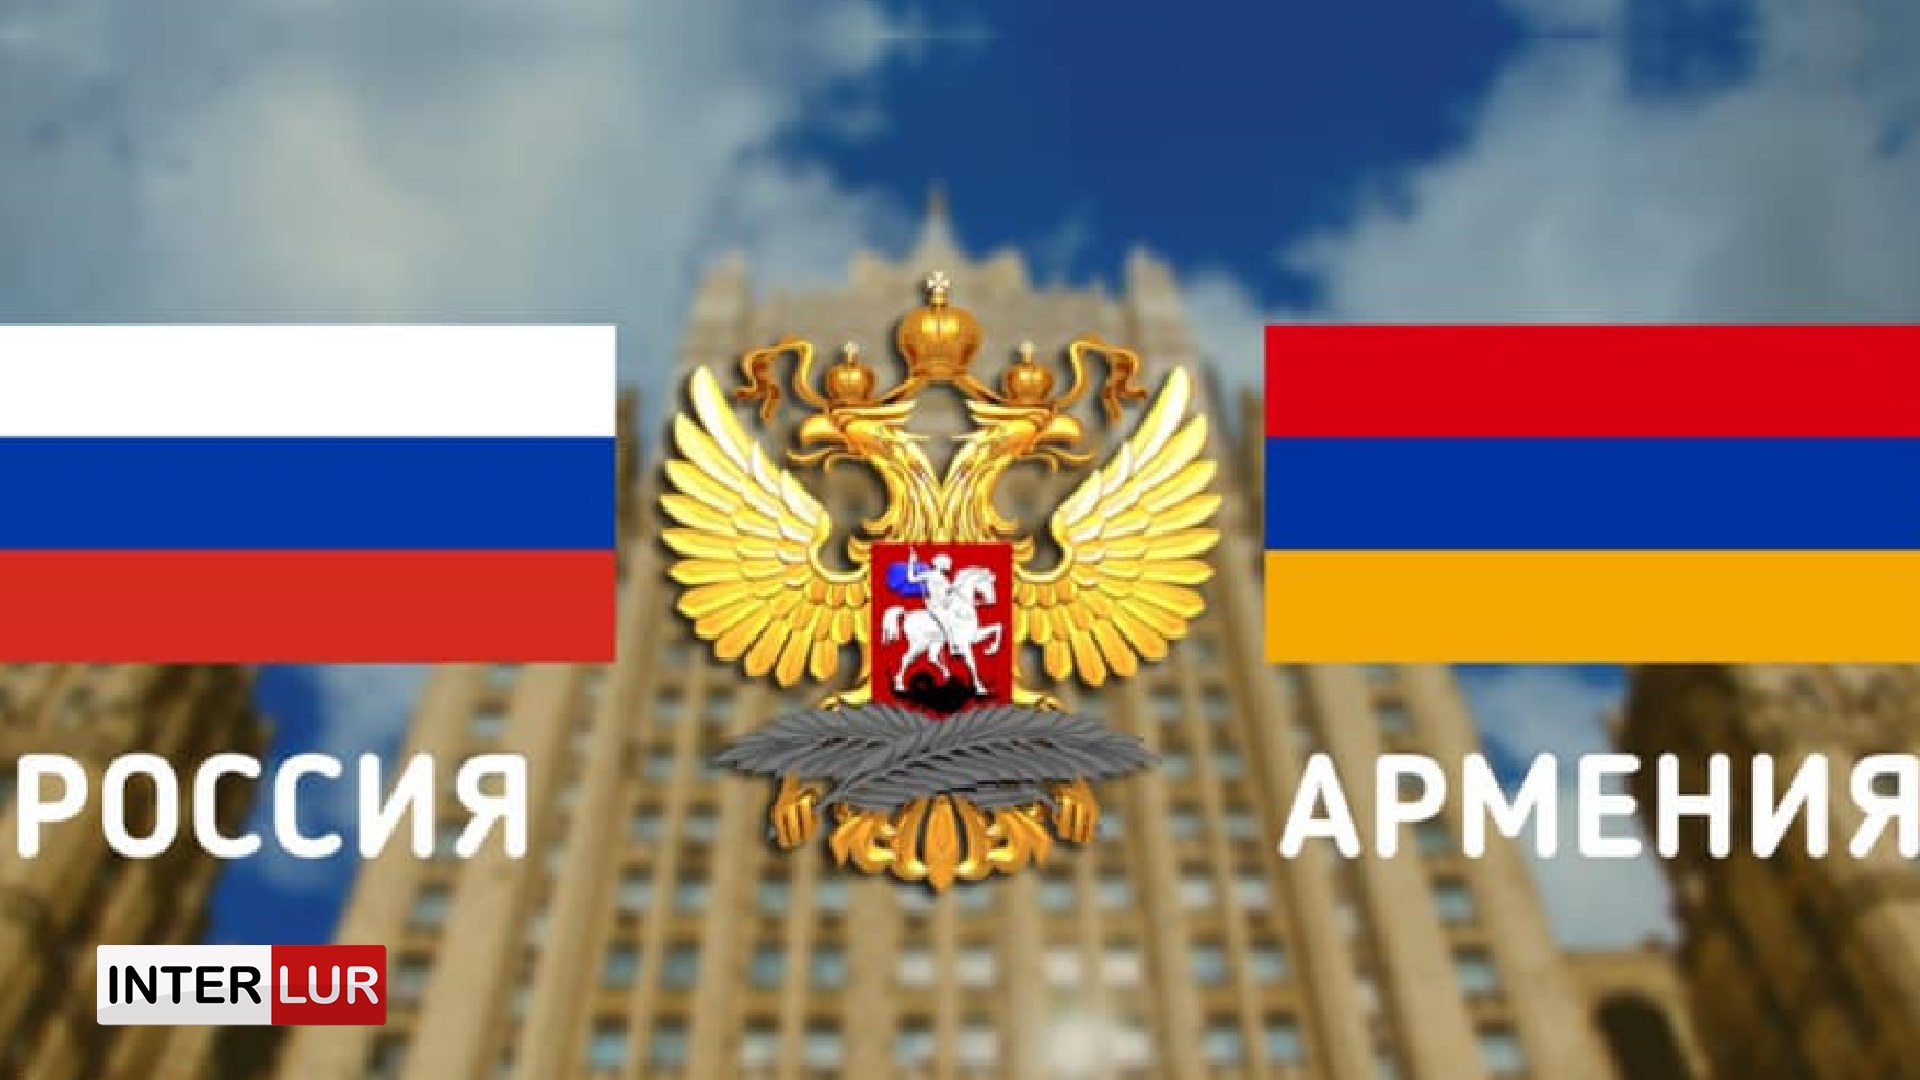 Մոսկվայում կայացել է ՌԴ և ՀՀ փոխարտգործնախարարների հանդիպումը. քննարկվել են տարածաշրջանային օրակարգի հարցեր  